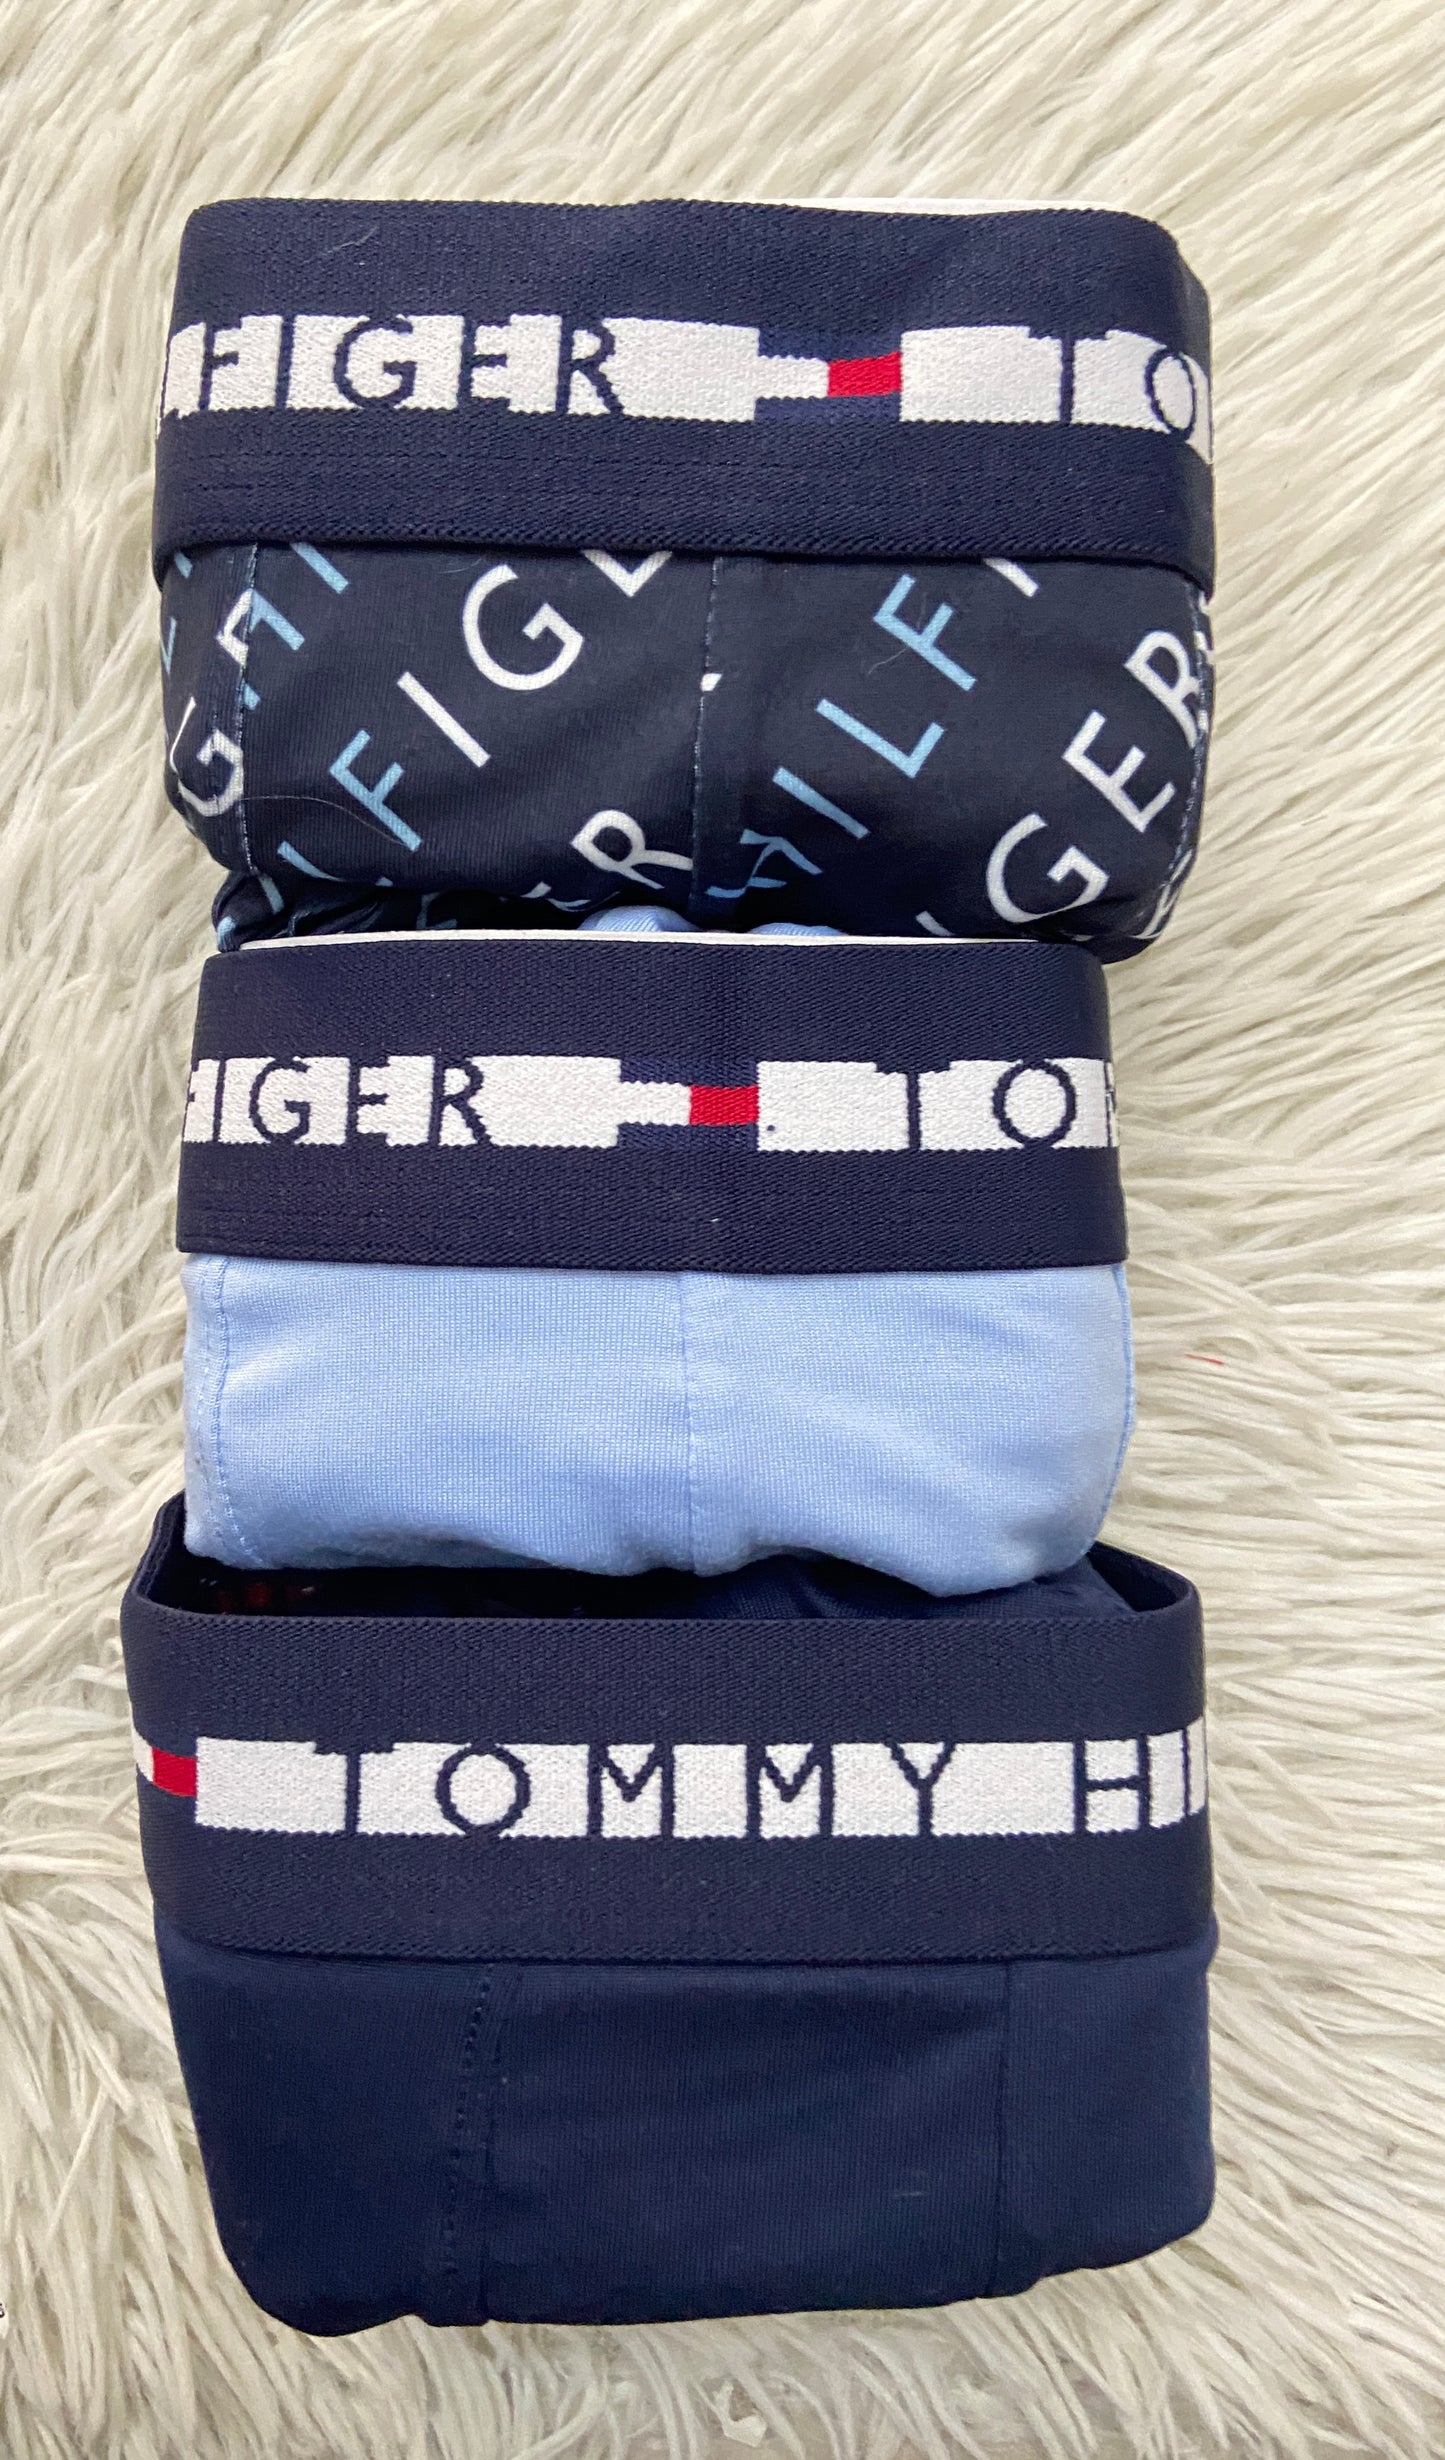 Set de Boxer Tommy Hilfiger original, pack 3, azul marino liso, azul con estampado y azul claro.